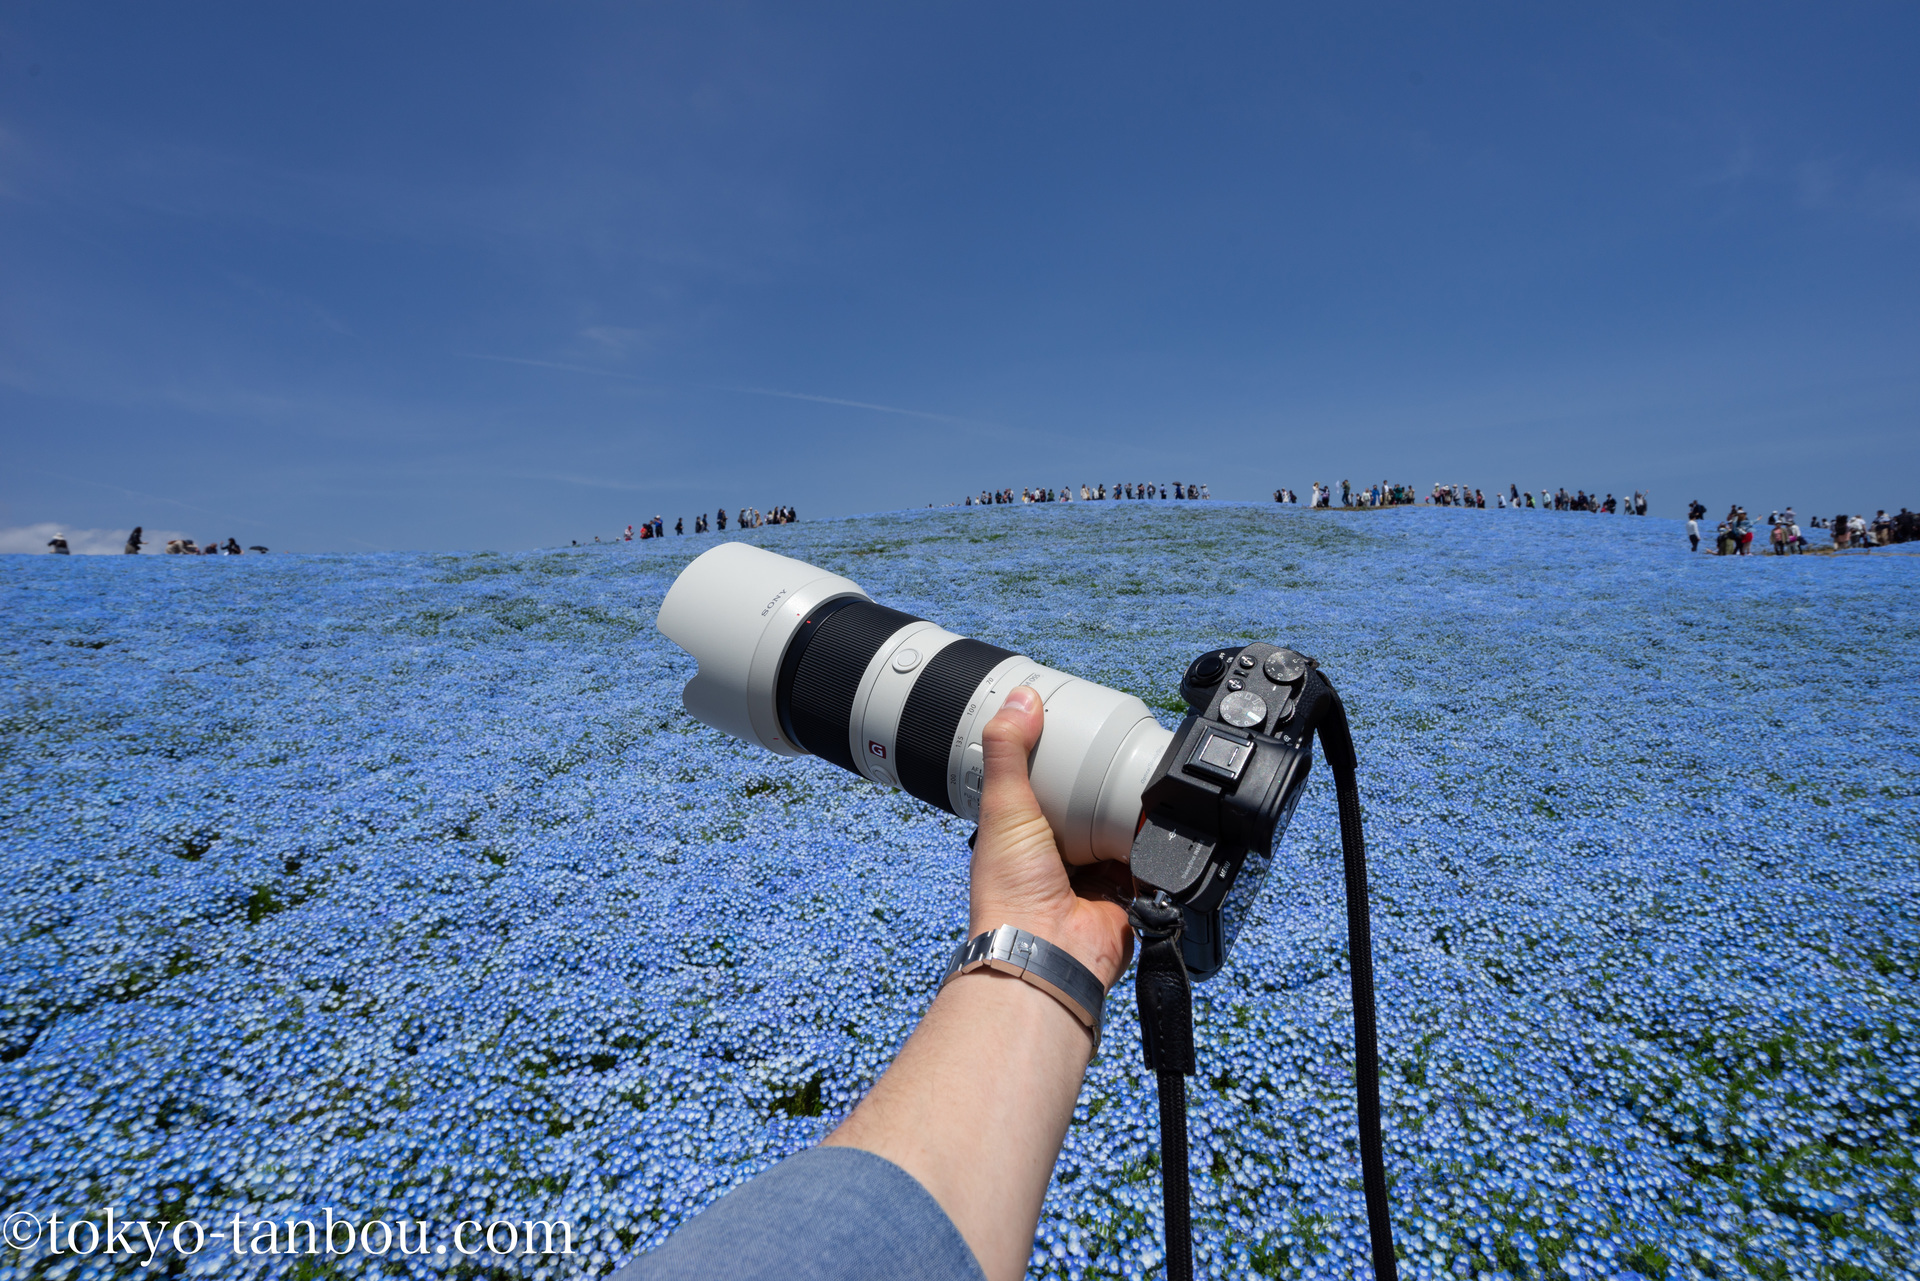 日本の絶景!! 国営ひたち海浜公園 みはらしの丘で、ネモフィラを撮影した話: ソニーのカメラで東京探訪記